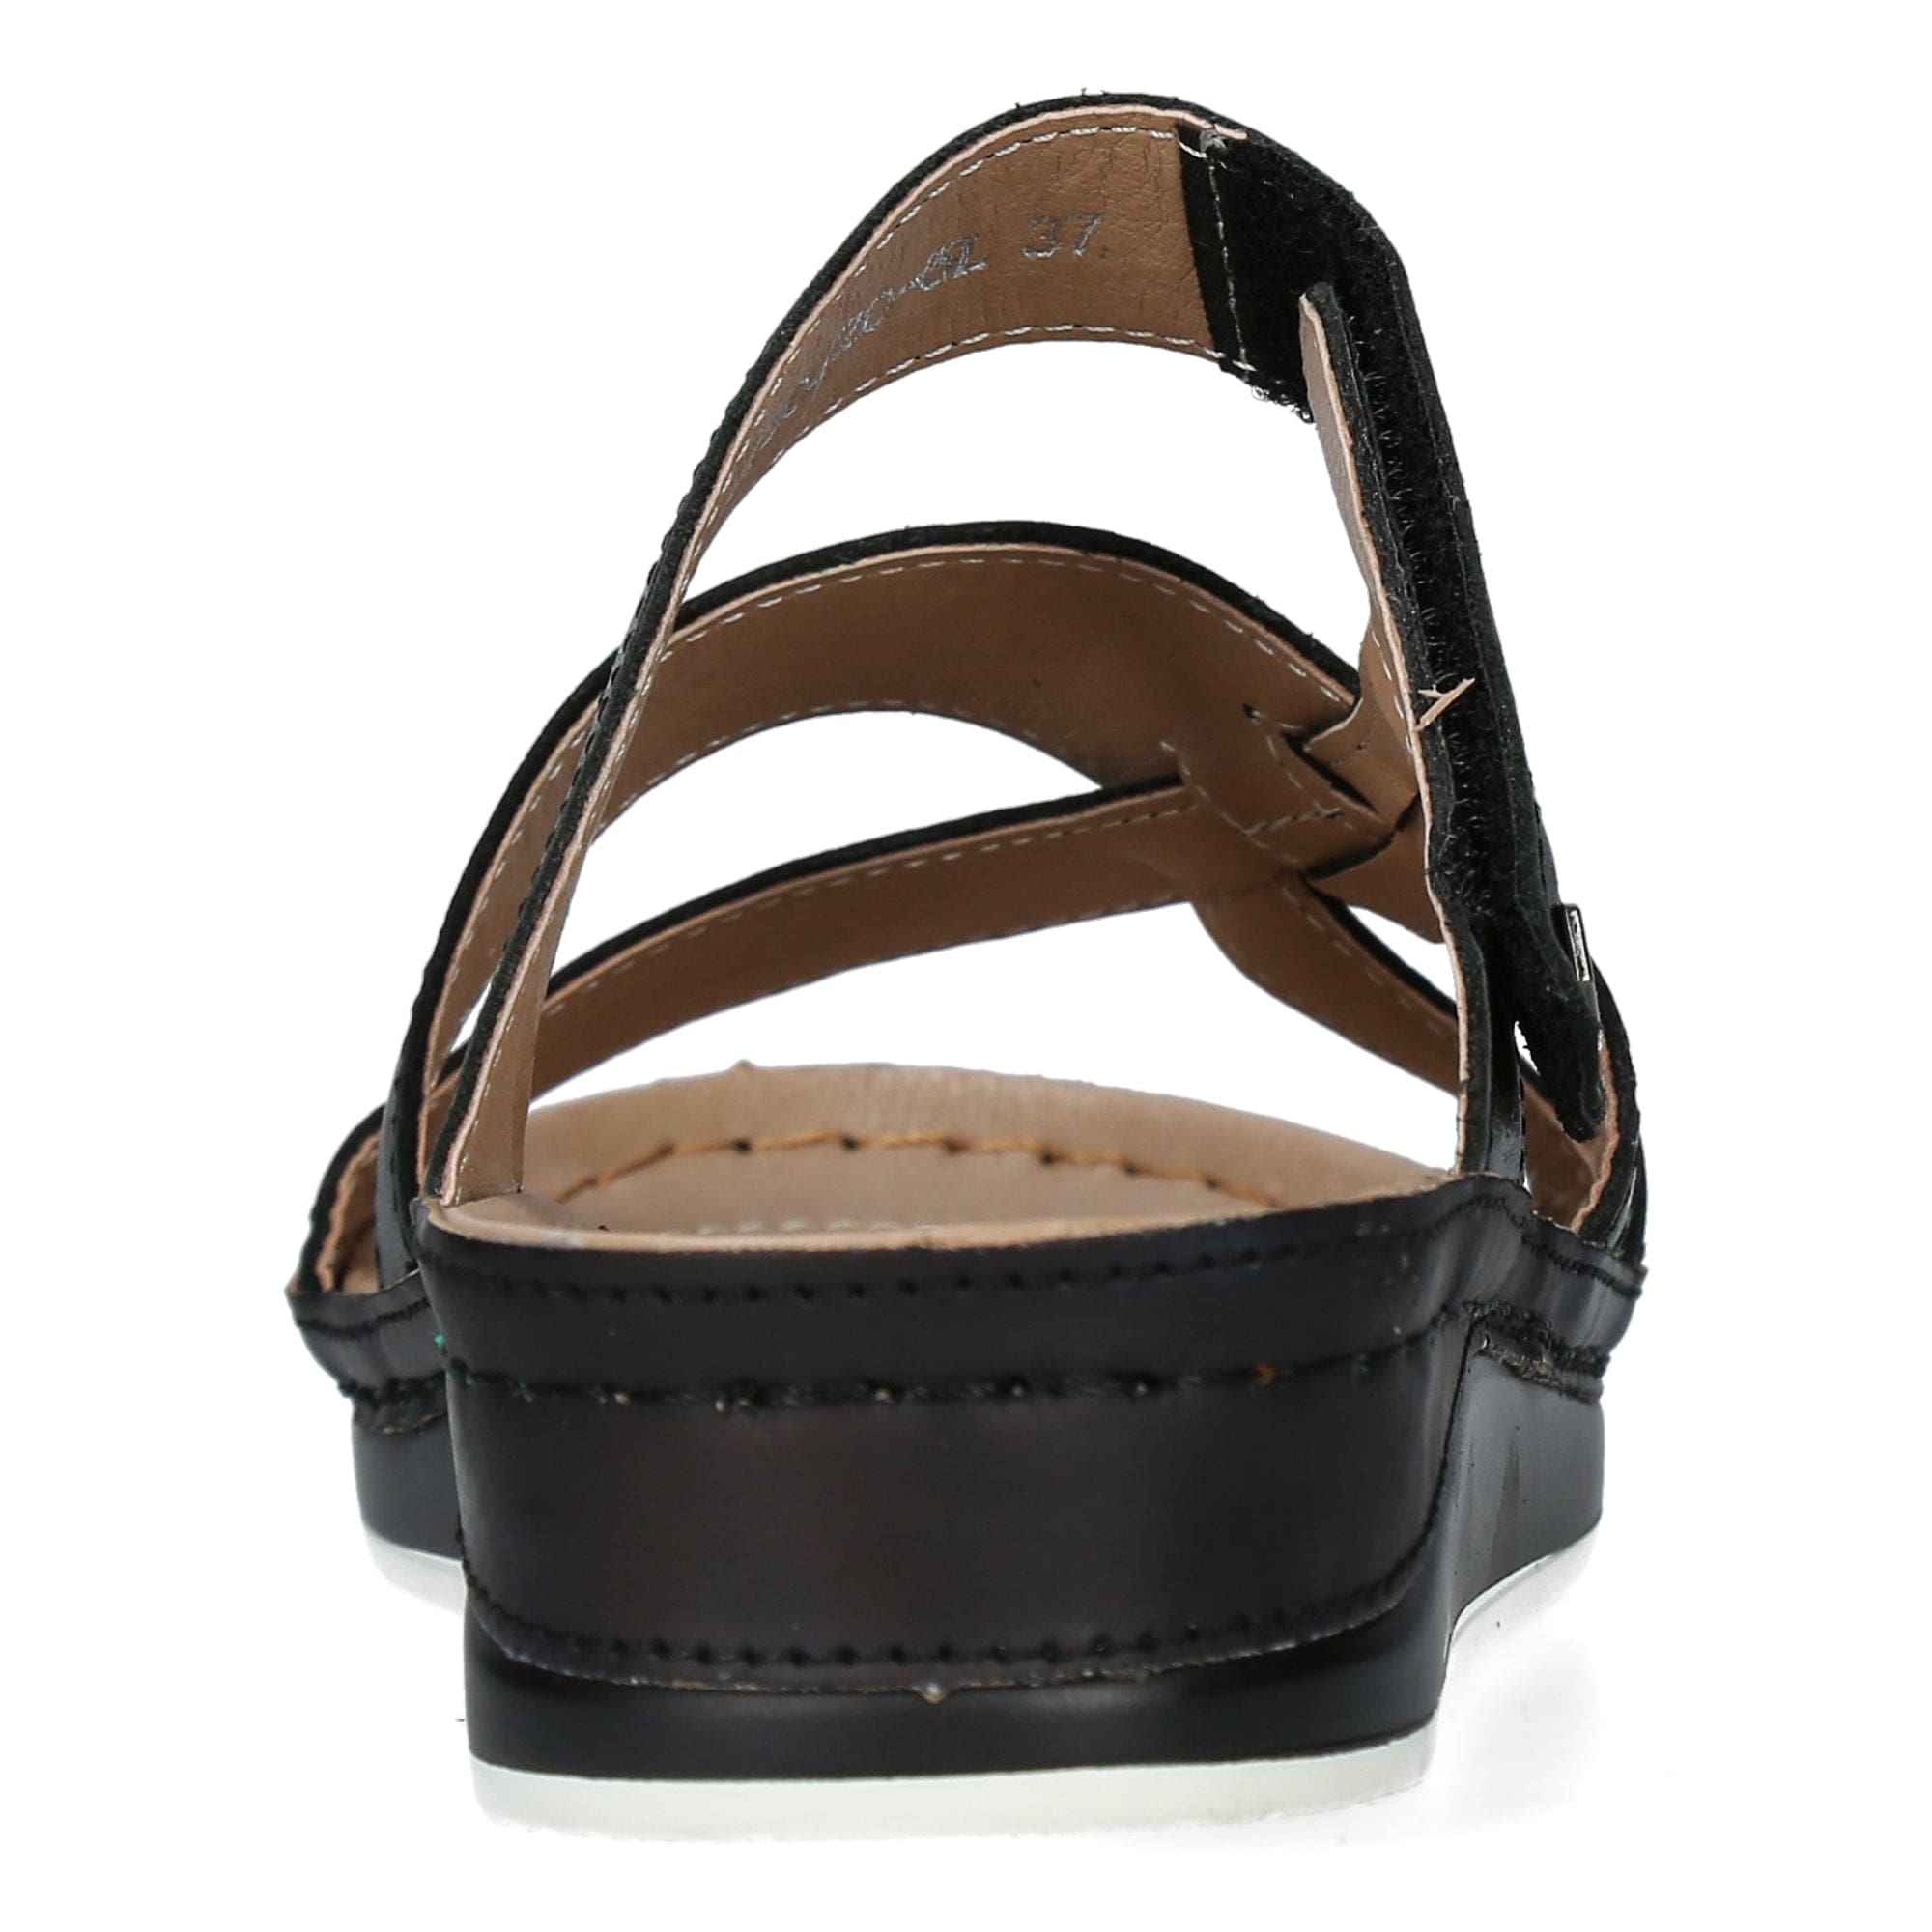 Shoe BRCUELO 0521 - Mule